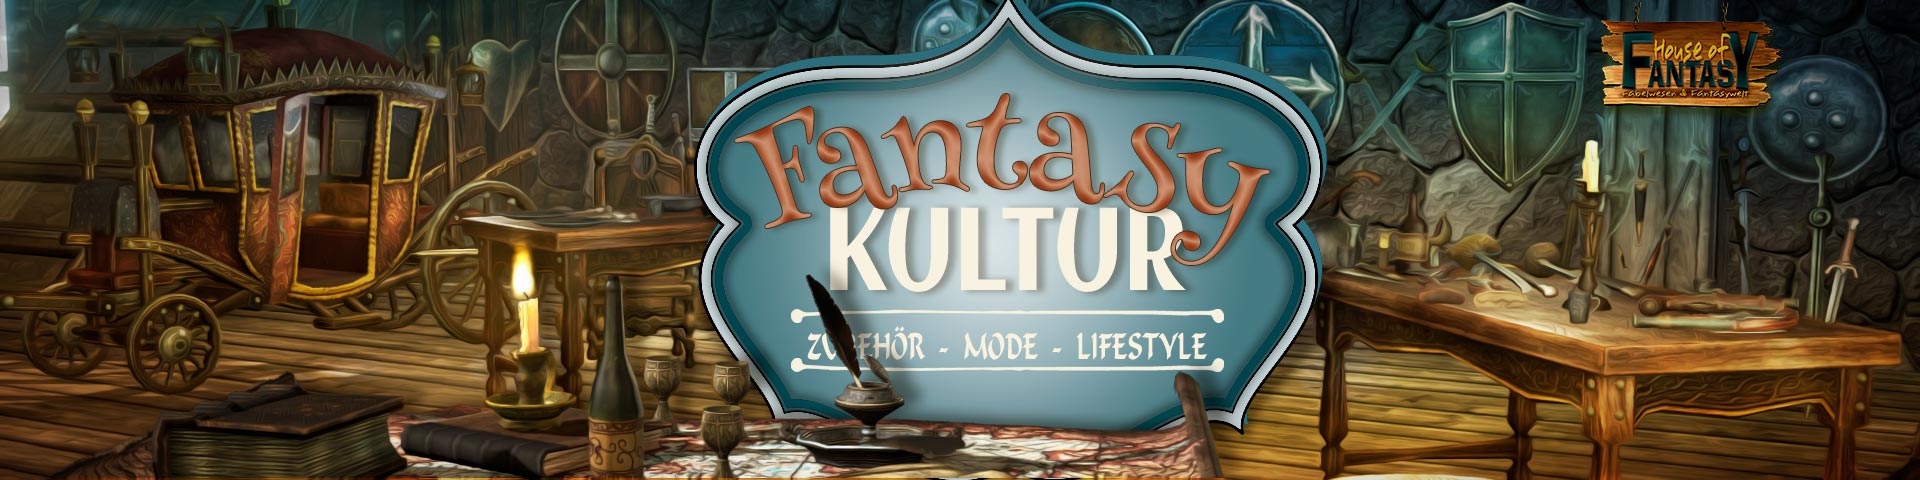 Fantasy Kultur - Leben wie in Fantasy Filmen - Zubehör, Mode, Lifestyle